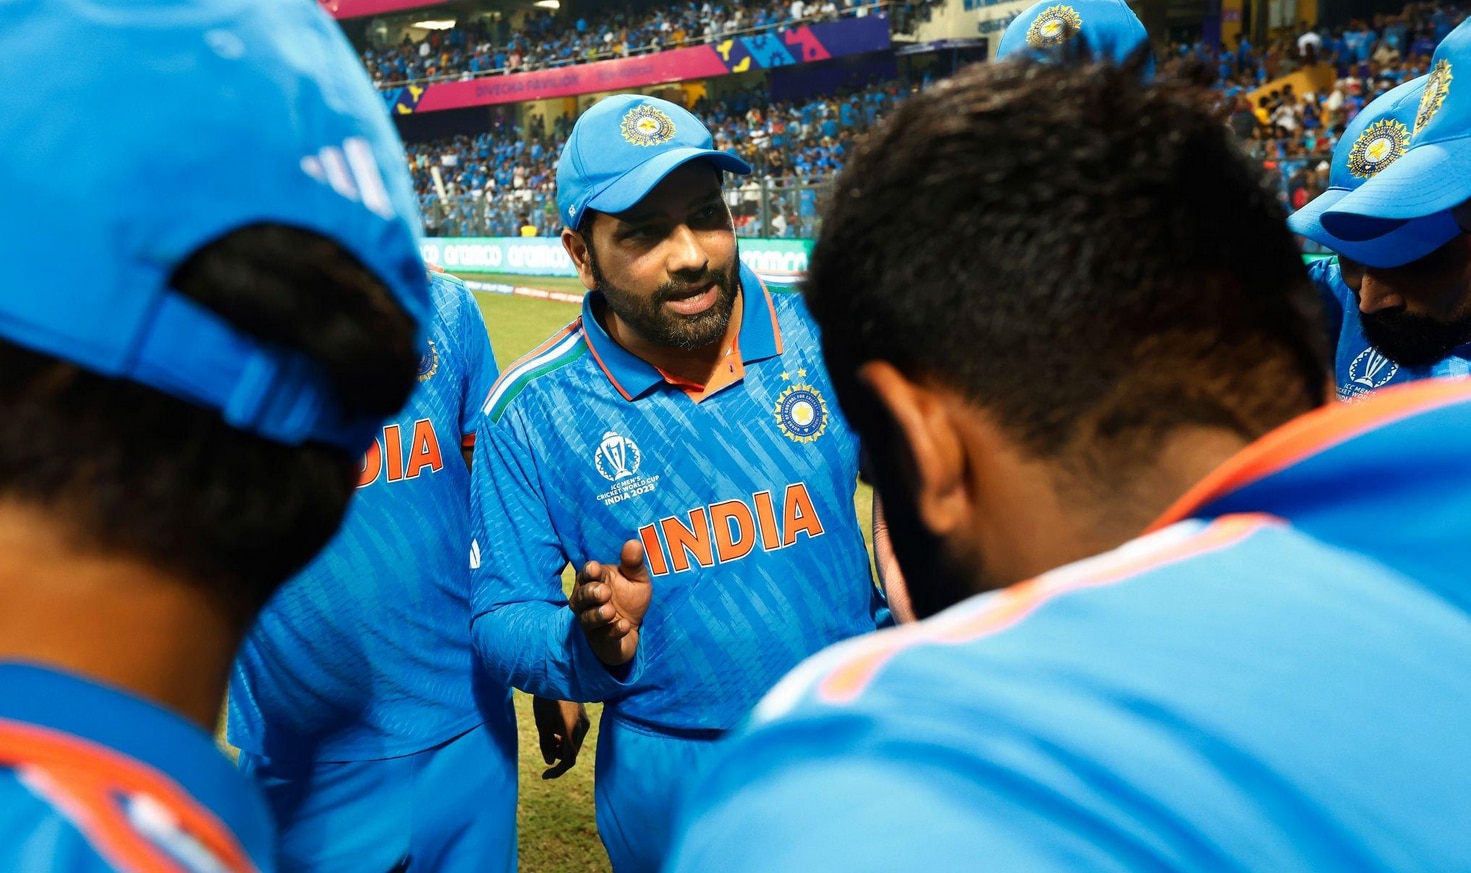 Ravindra Jadeja lethal Weapon of Team India can demolish Australian Team In World Cup 2023 Final | वर्ल्ड कप फाइनल में ऑस्ट्रेलिया को ‘घुटनों के बल’ ला देगा ये खिलाड़ी! टीम इंडिया को जिता सकता है ट्रॉफी